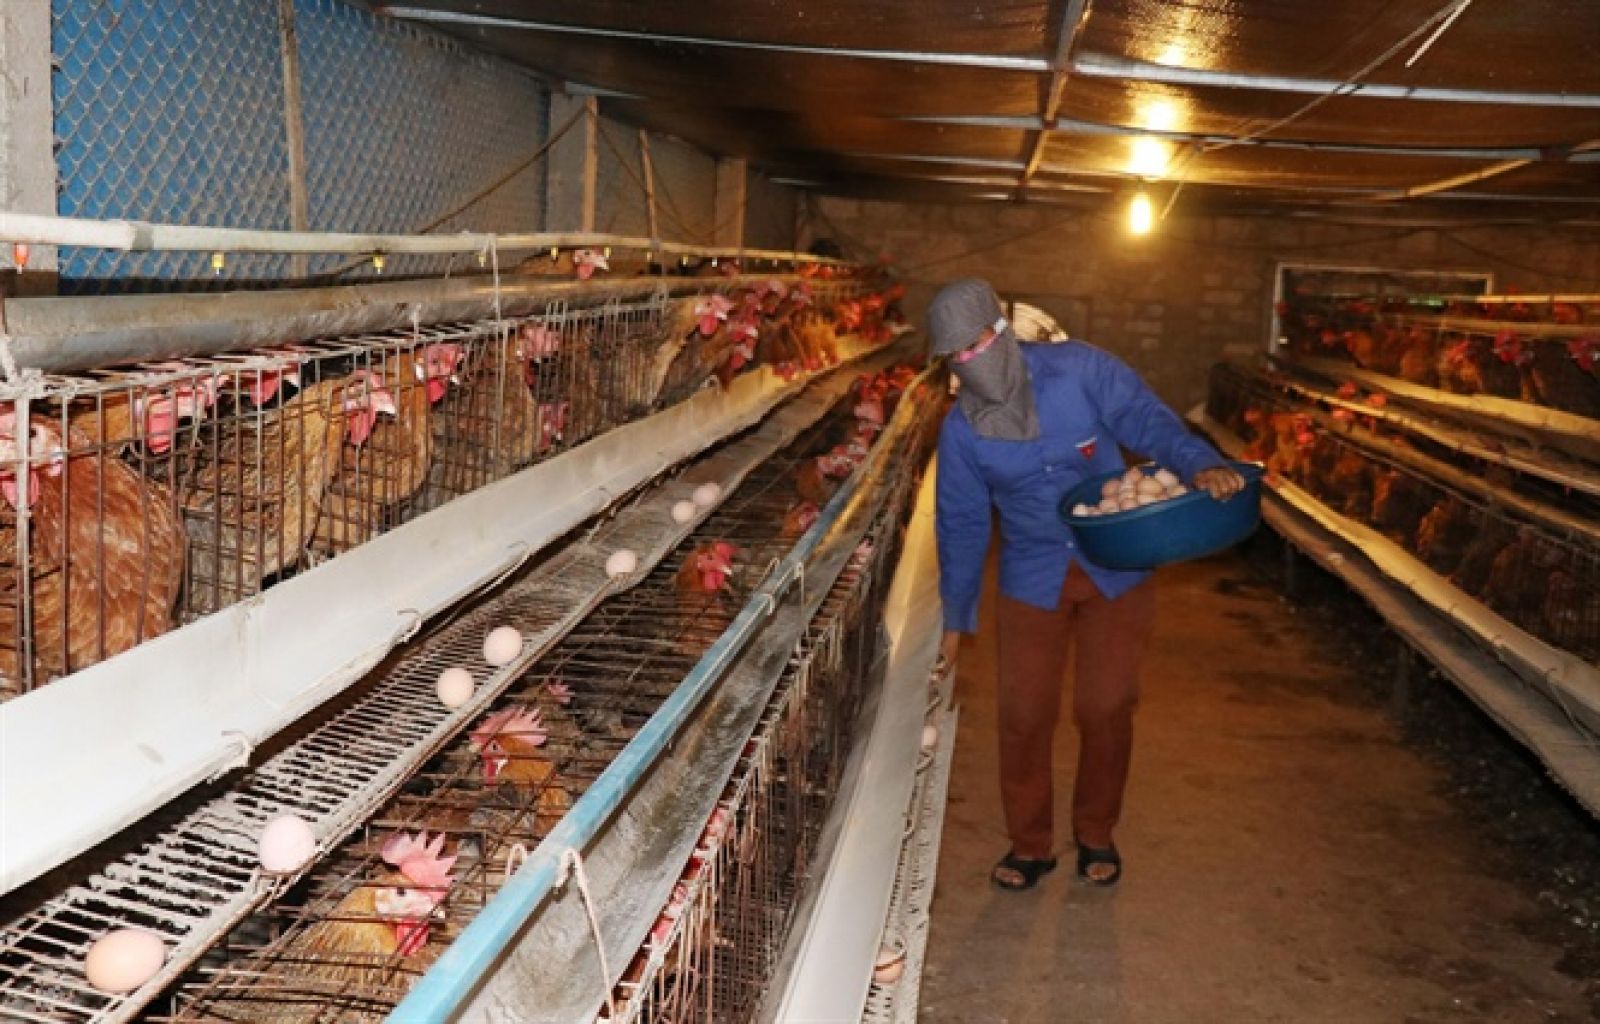 Làm giàu từ nông nghiệp: Mô hình nuôi gà kiểu mới (thu riêng tiền lãi 1 tỷ/ năm)